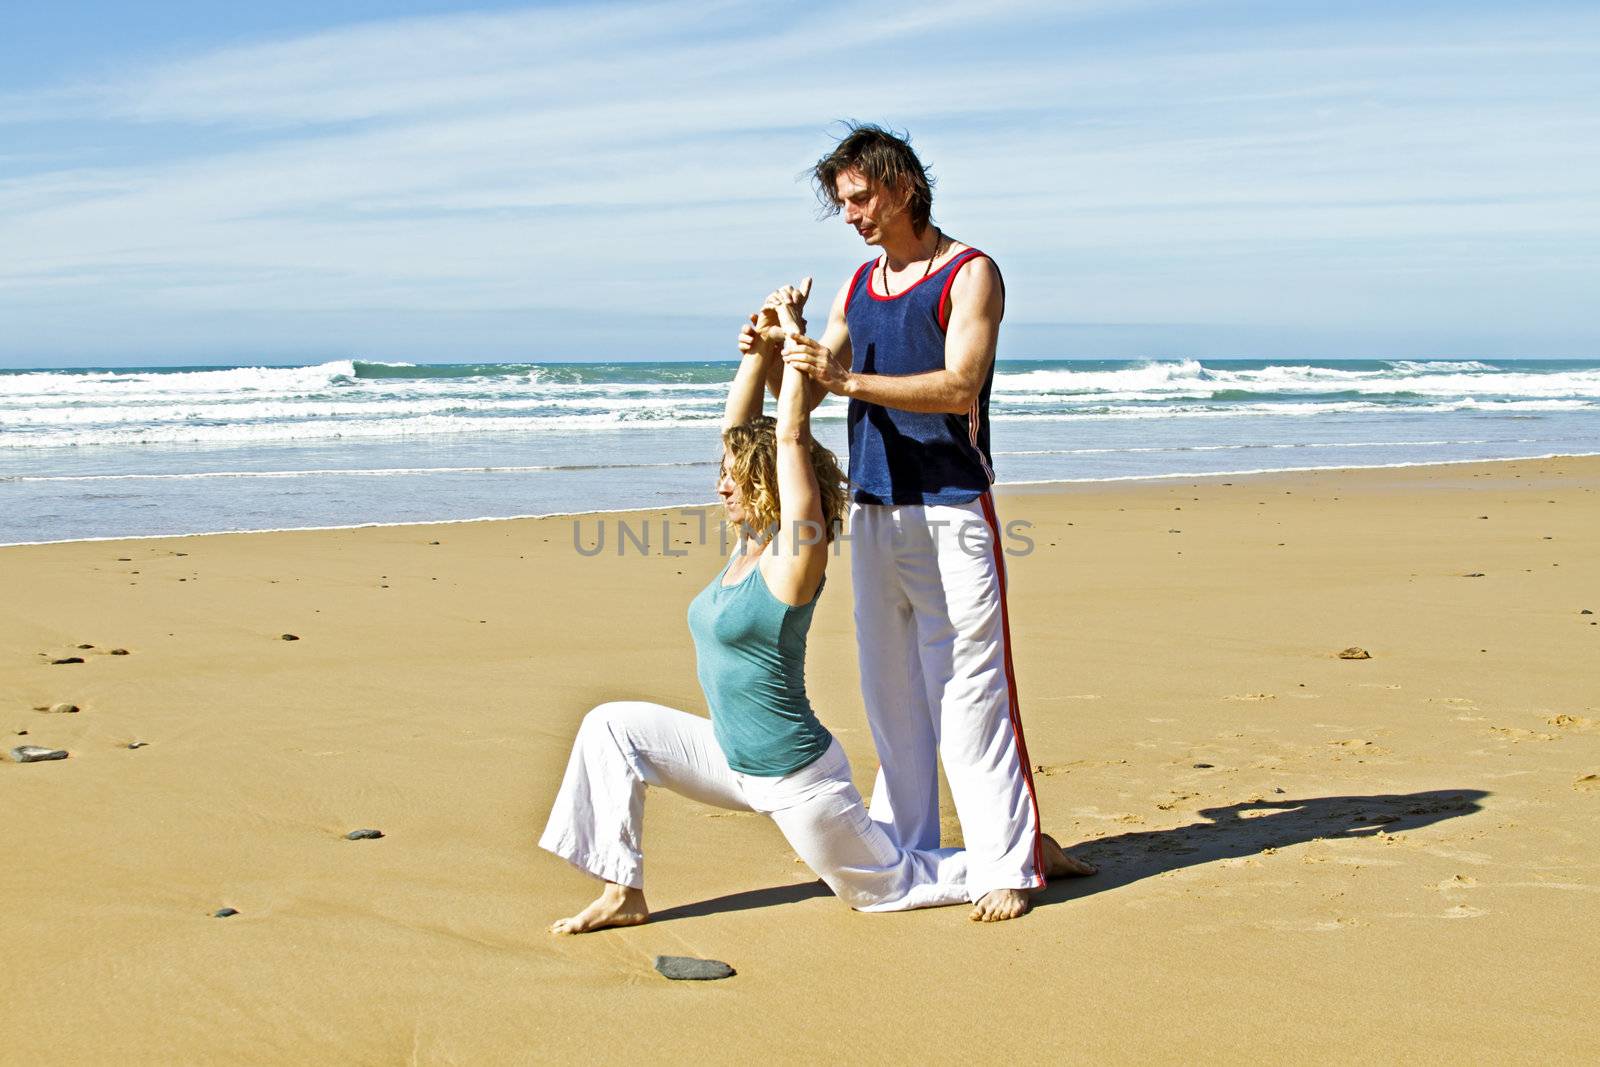 Yoga teacher teaches student yoga on the beach by devy